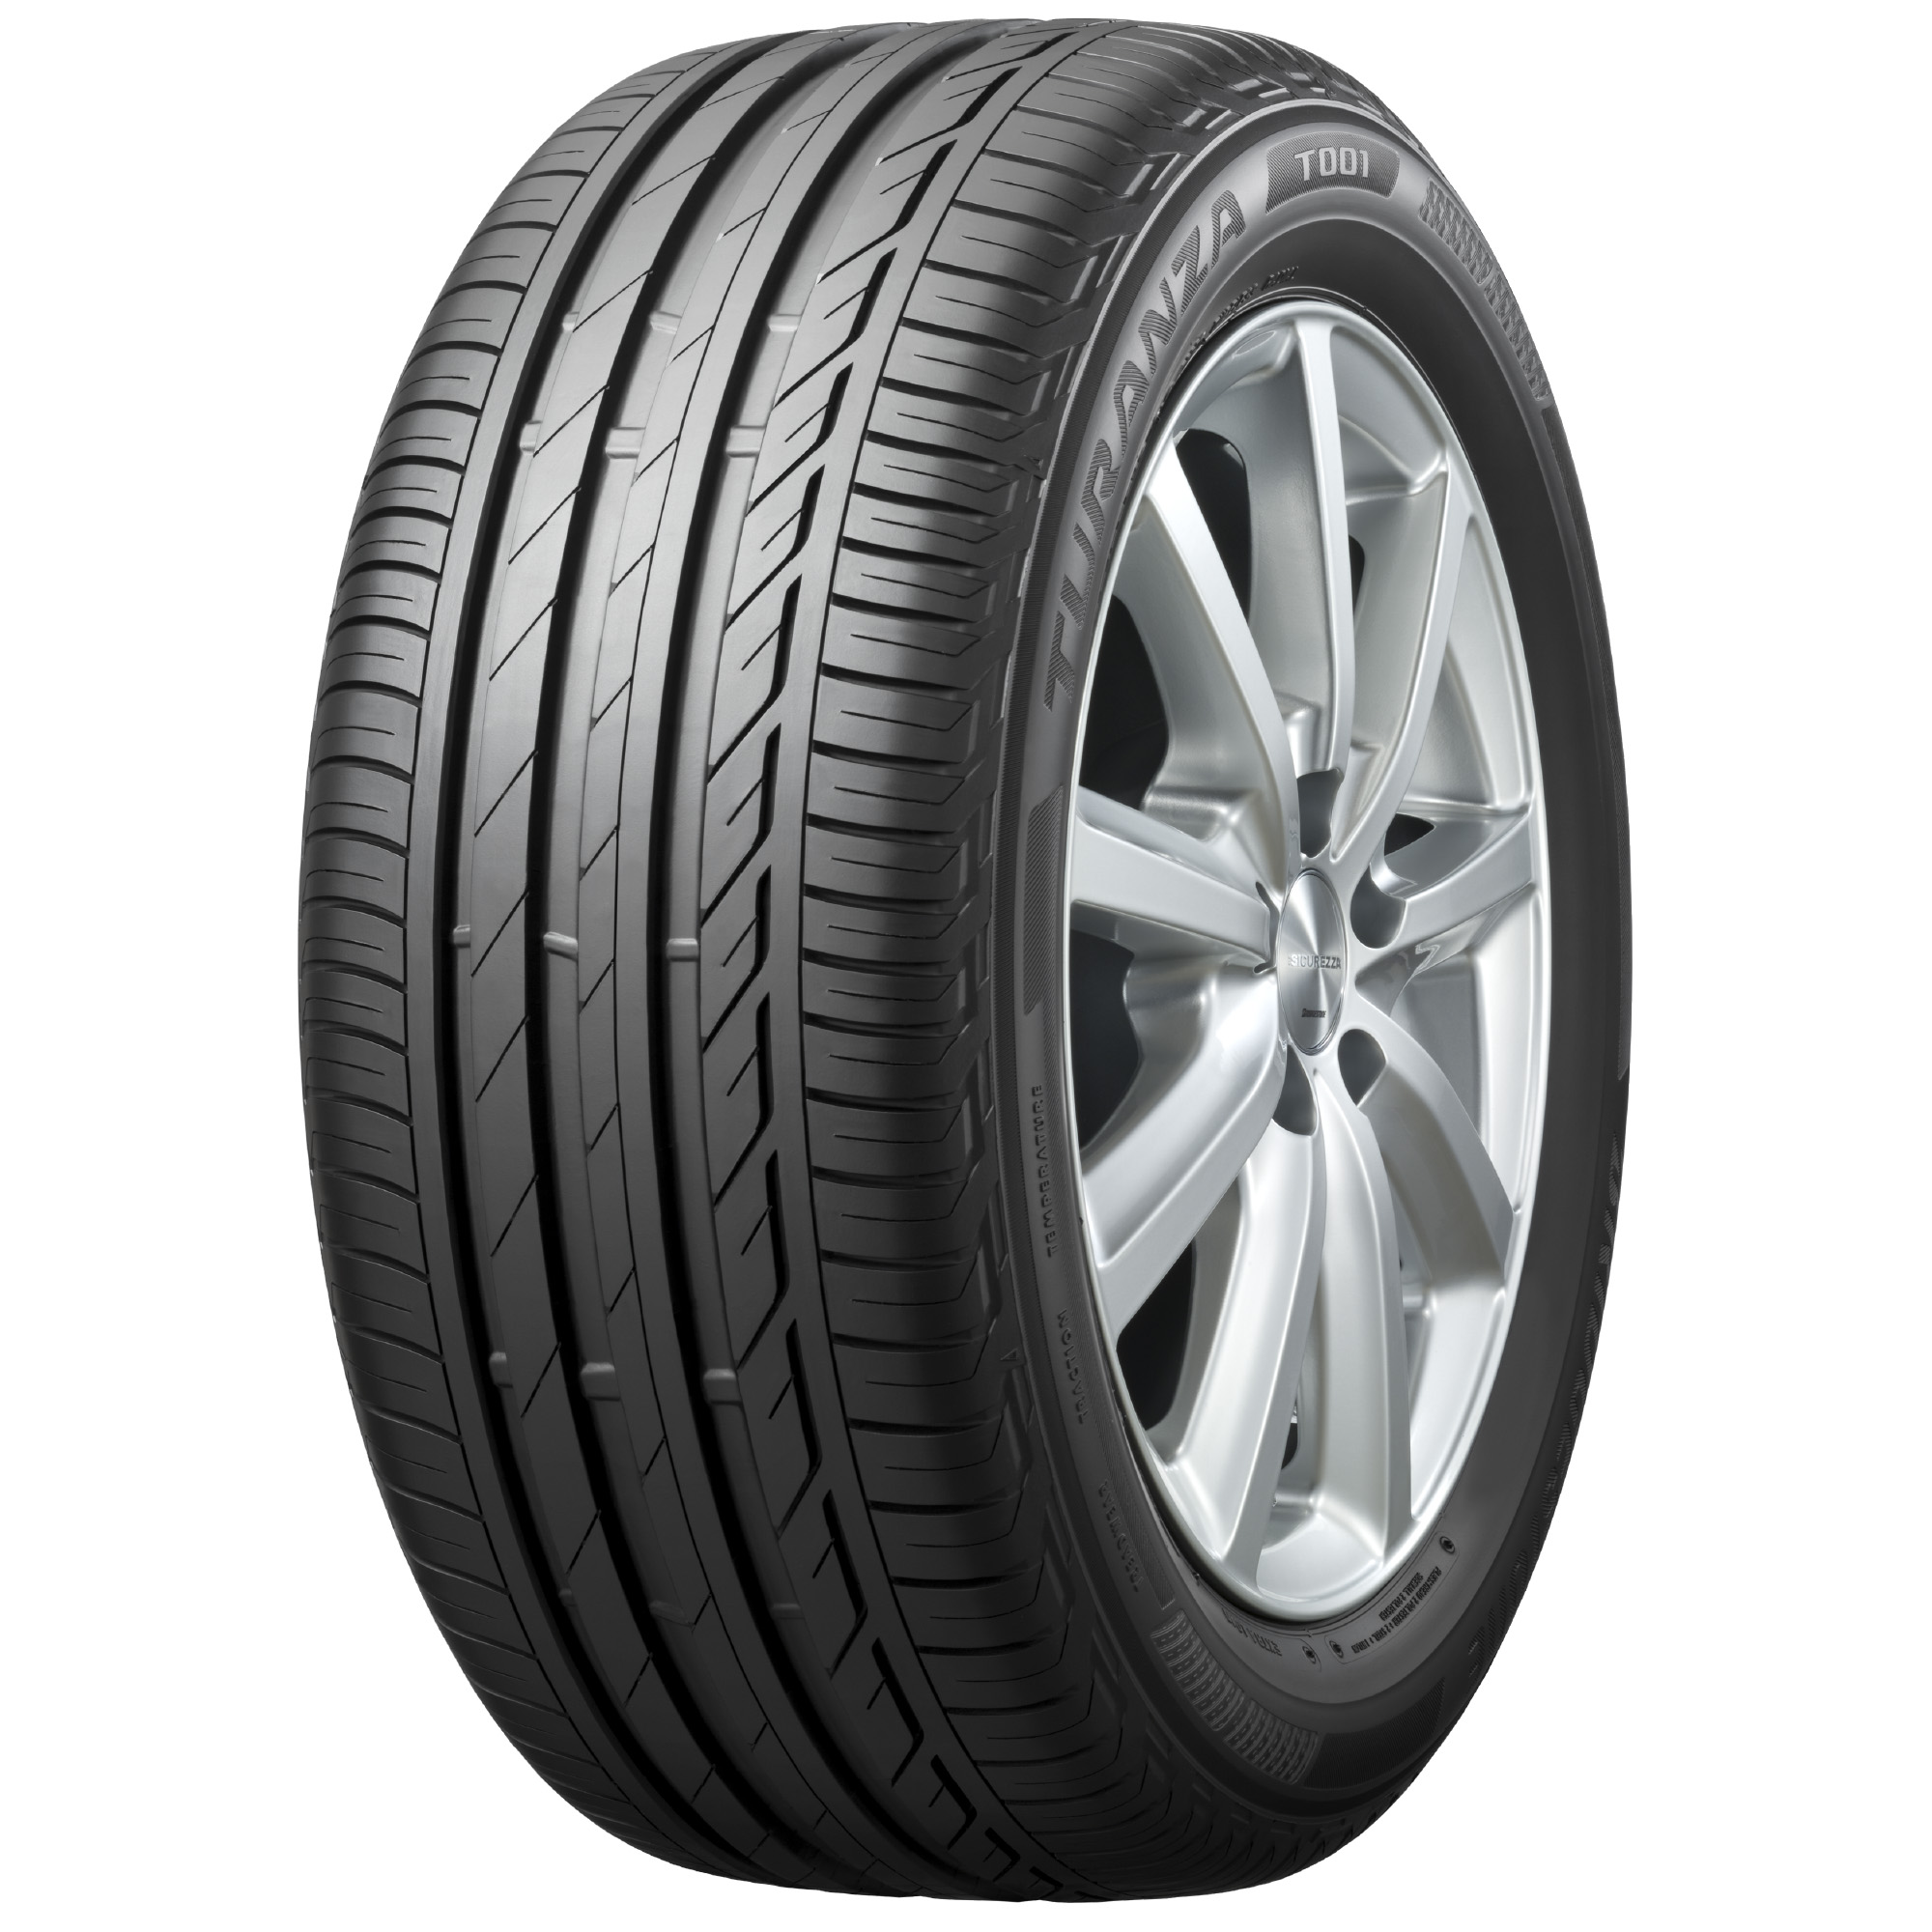 TURANZA T001輪胎產品圖- 普利司通 Bridgestone